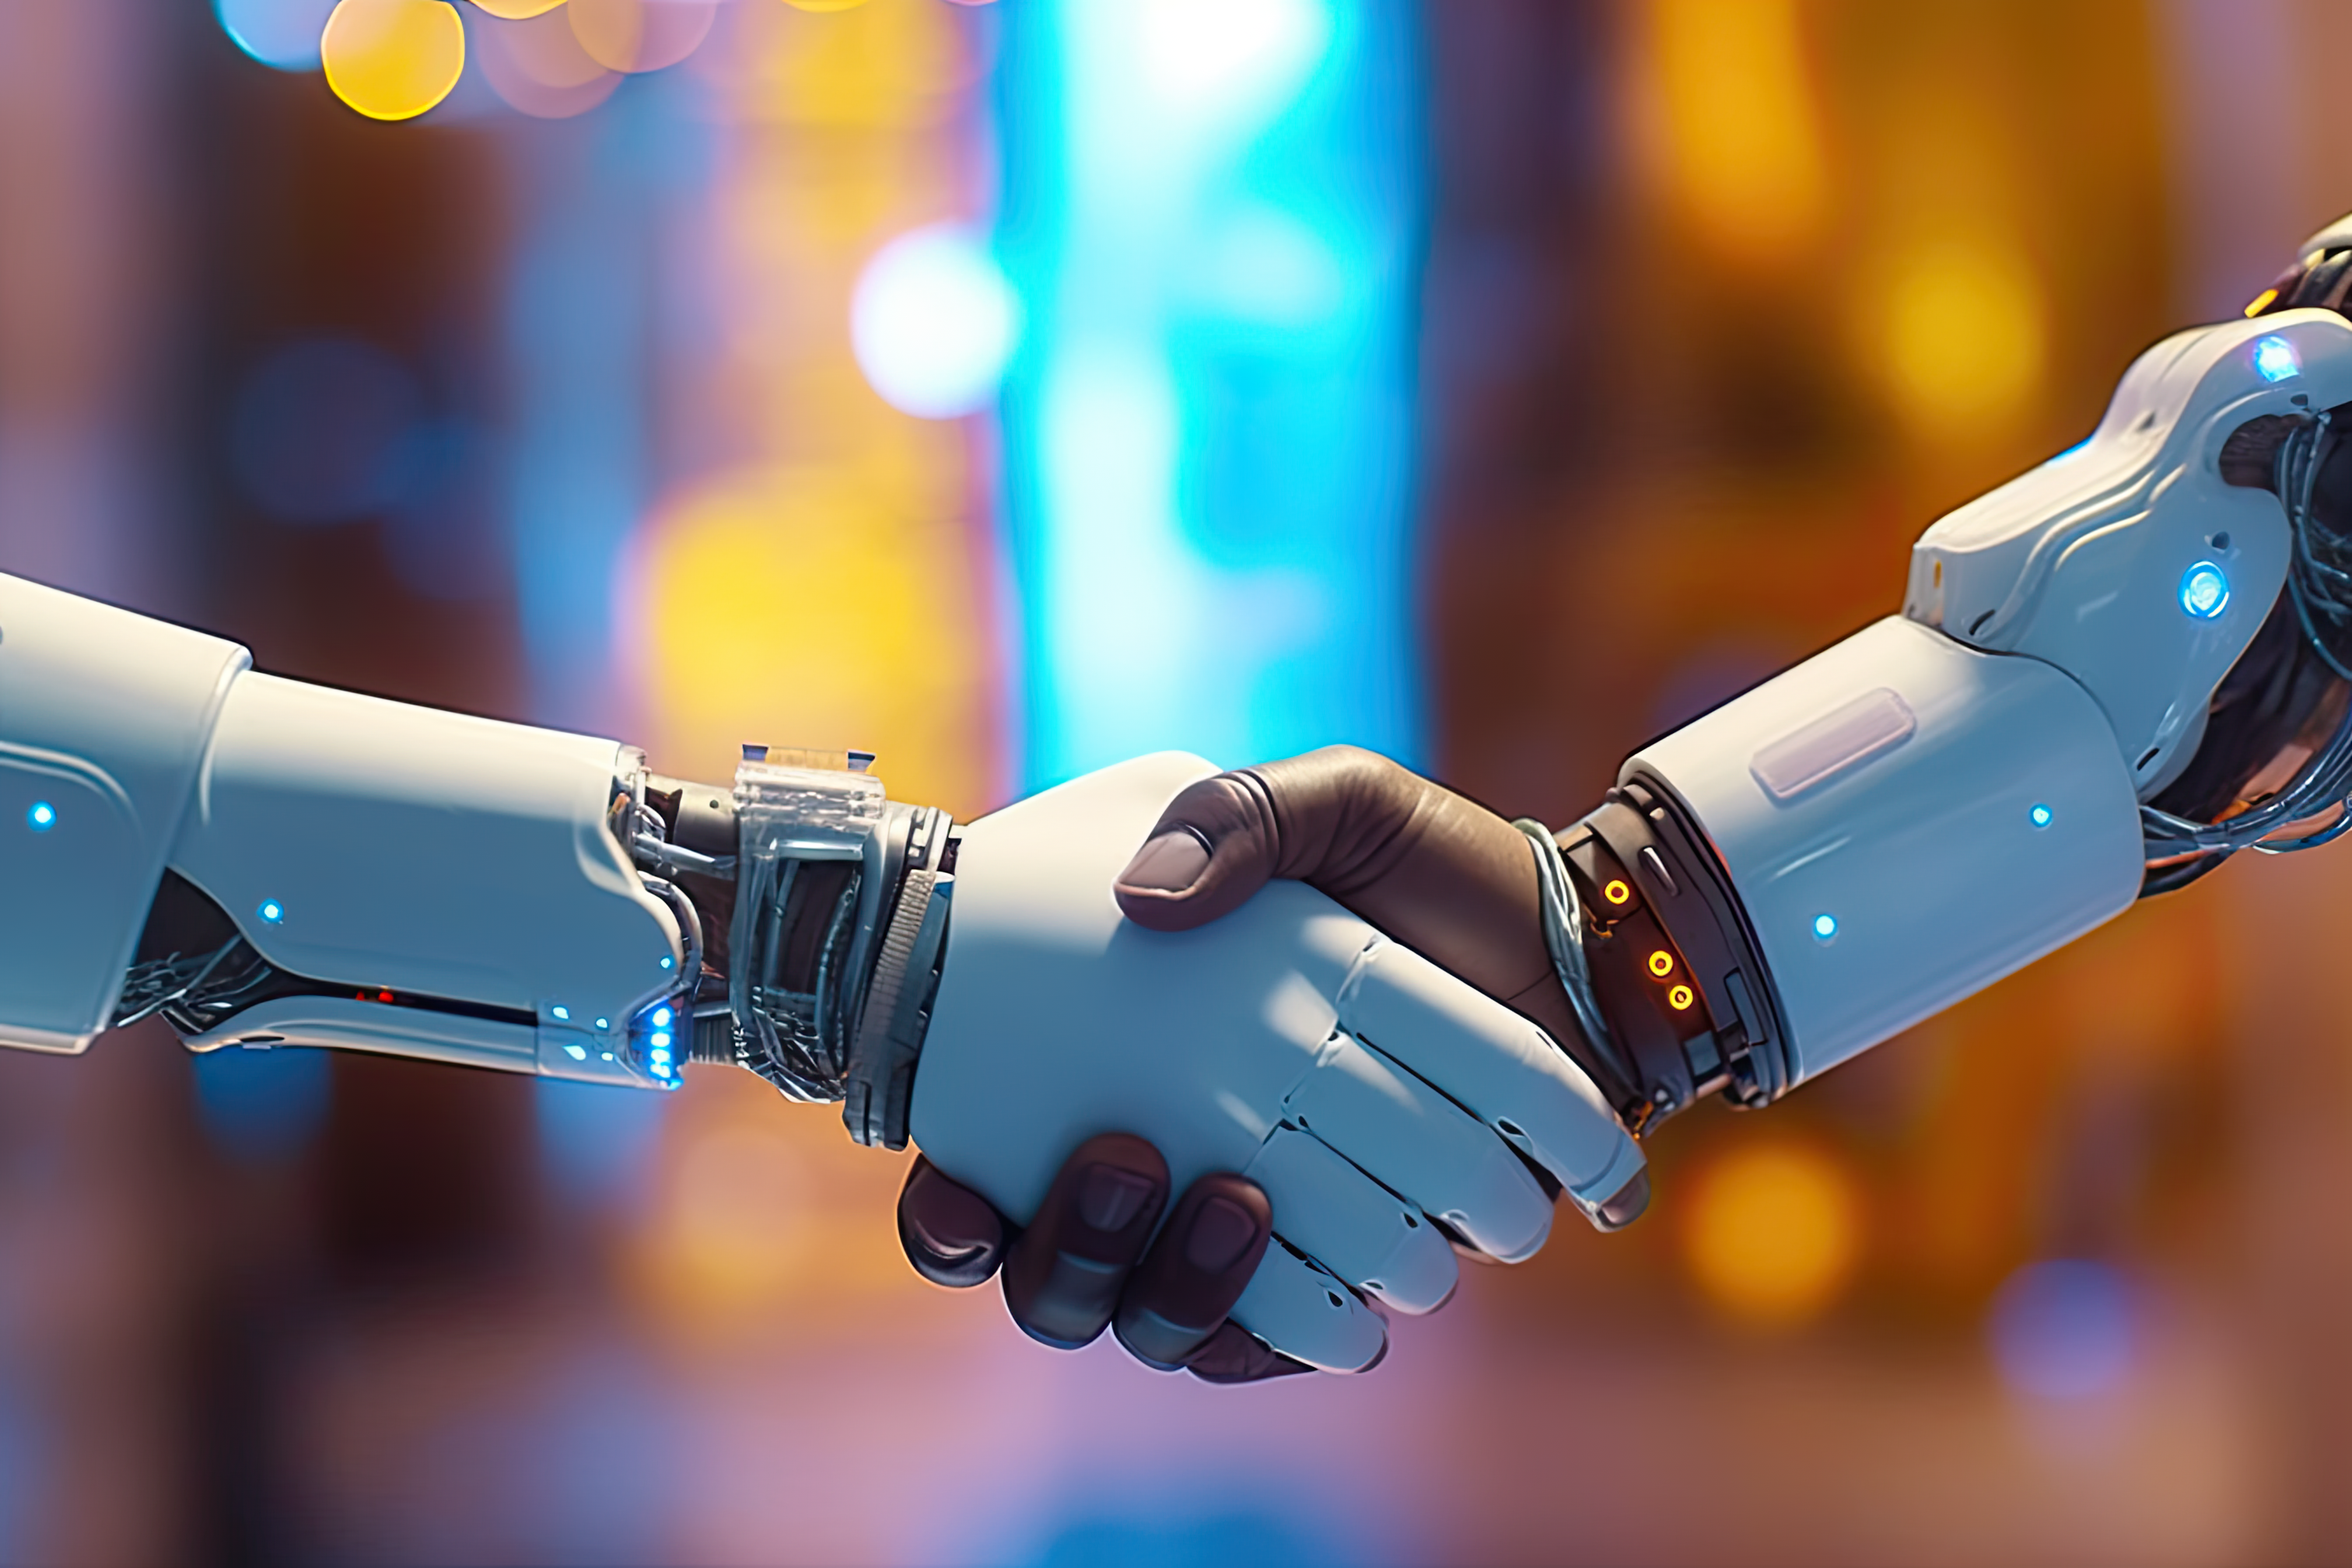 Robot hand shake with human